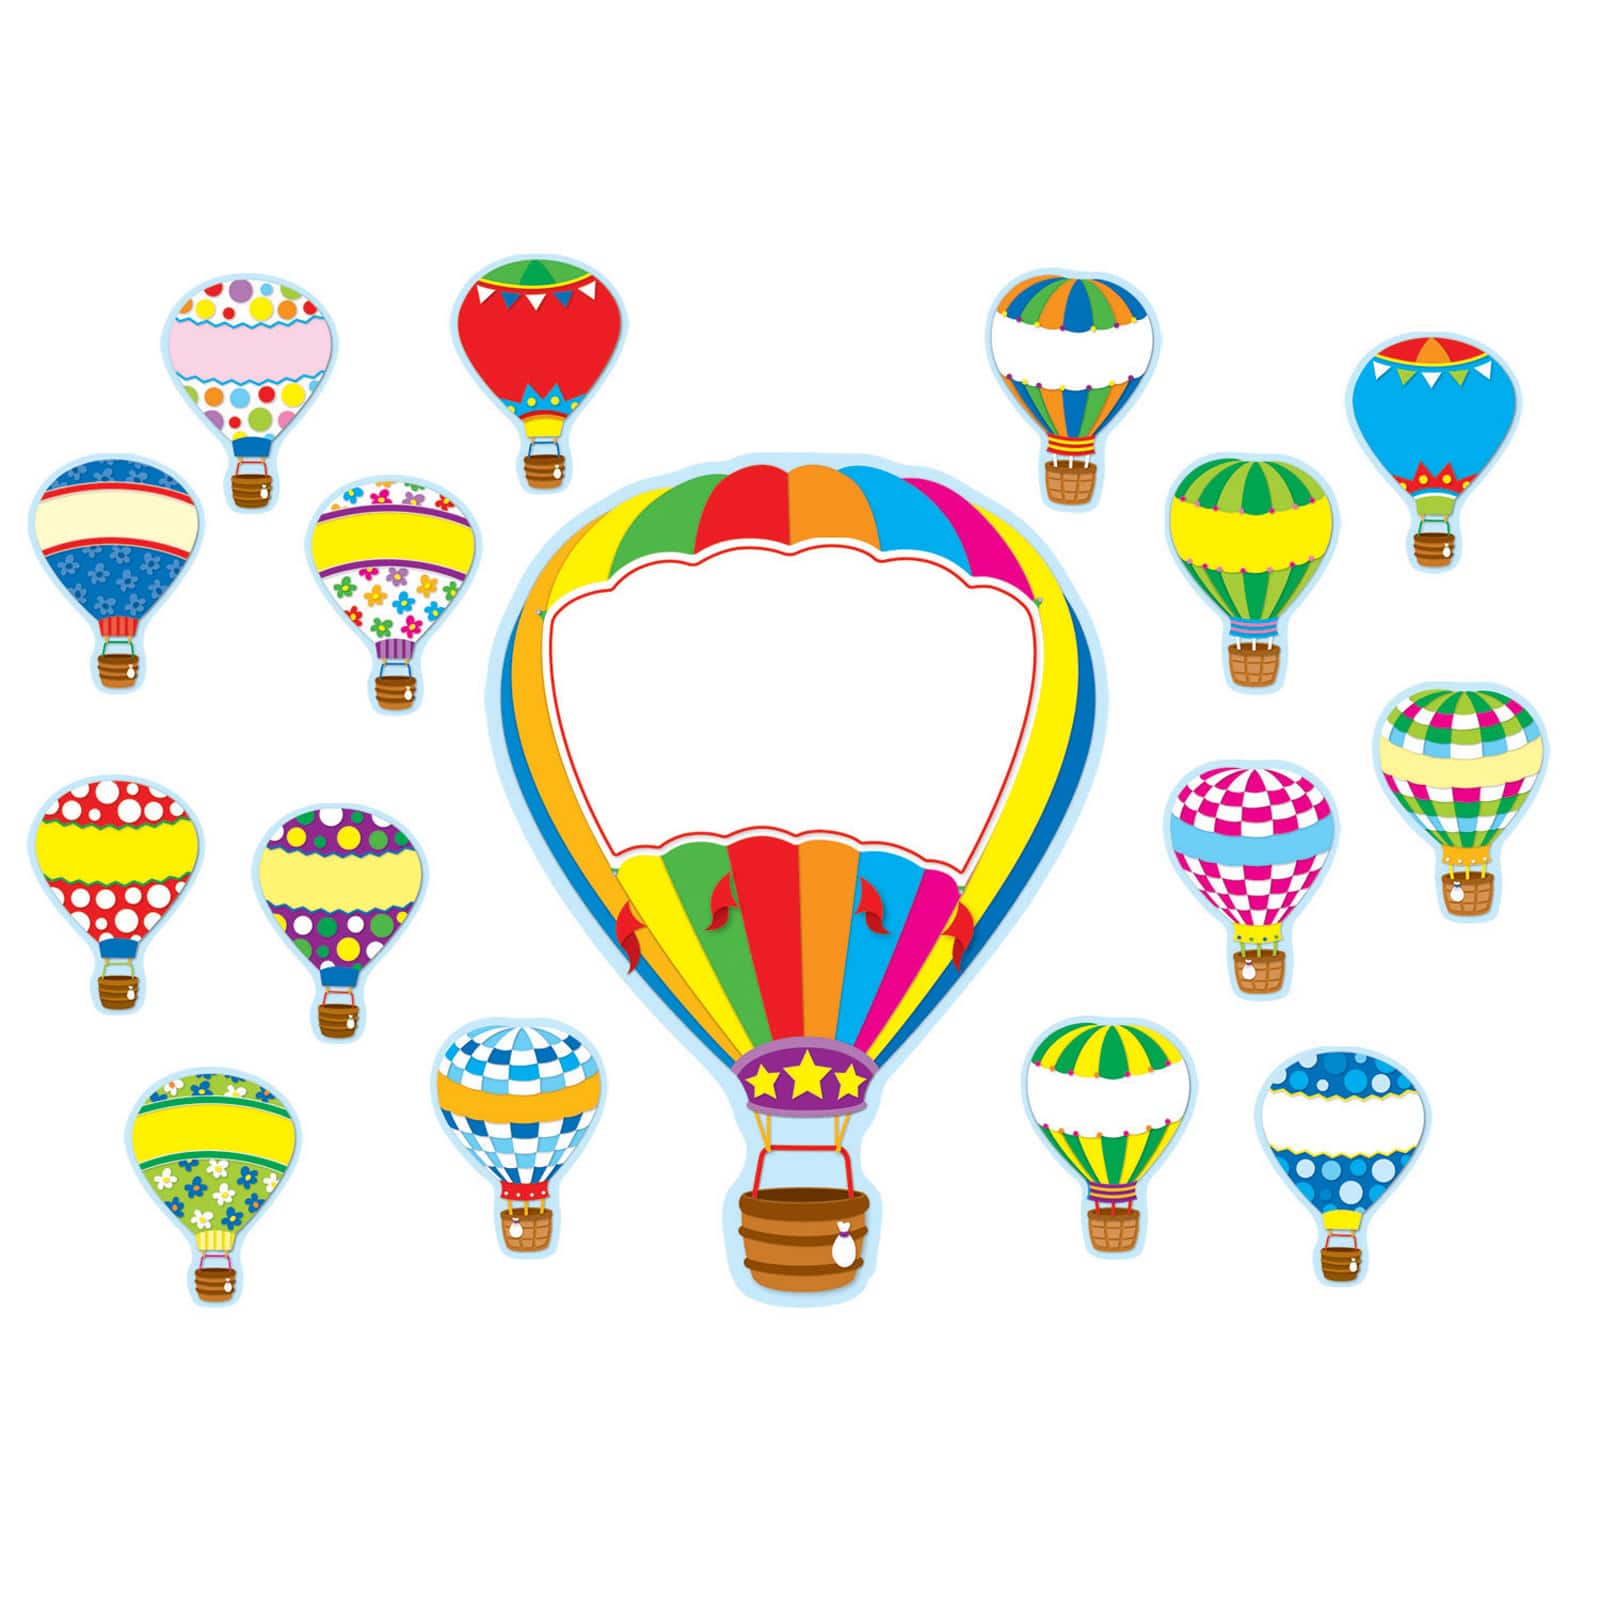 Carson Dellosa™ Hot Air Balloons Bulletin Board Set, 38 Pieces